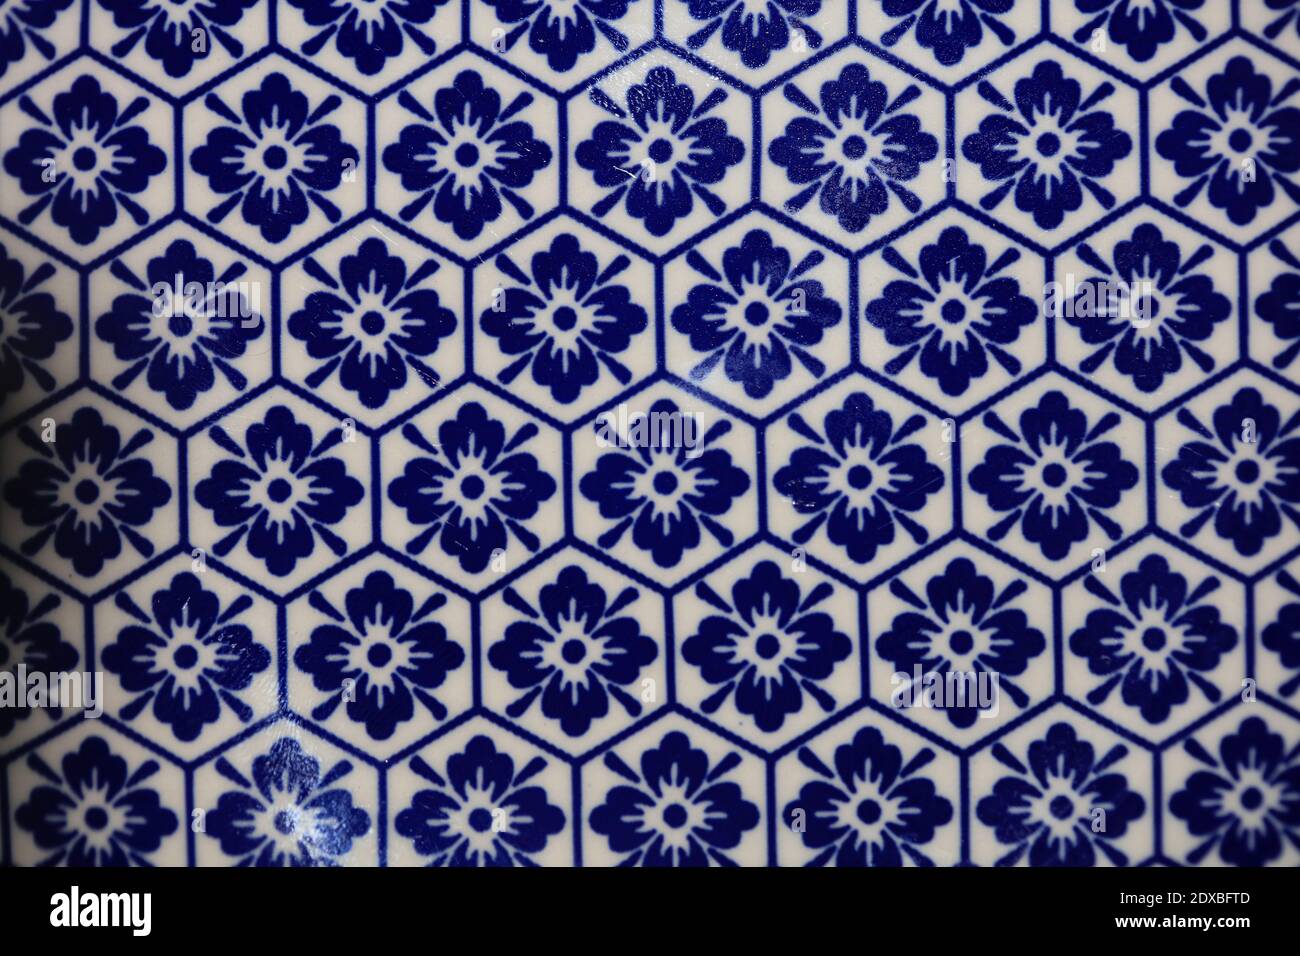 Blau und weiß Blumen Muster Makro Hintergrund fünfzig Megapixel druckt Stockfoto